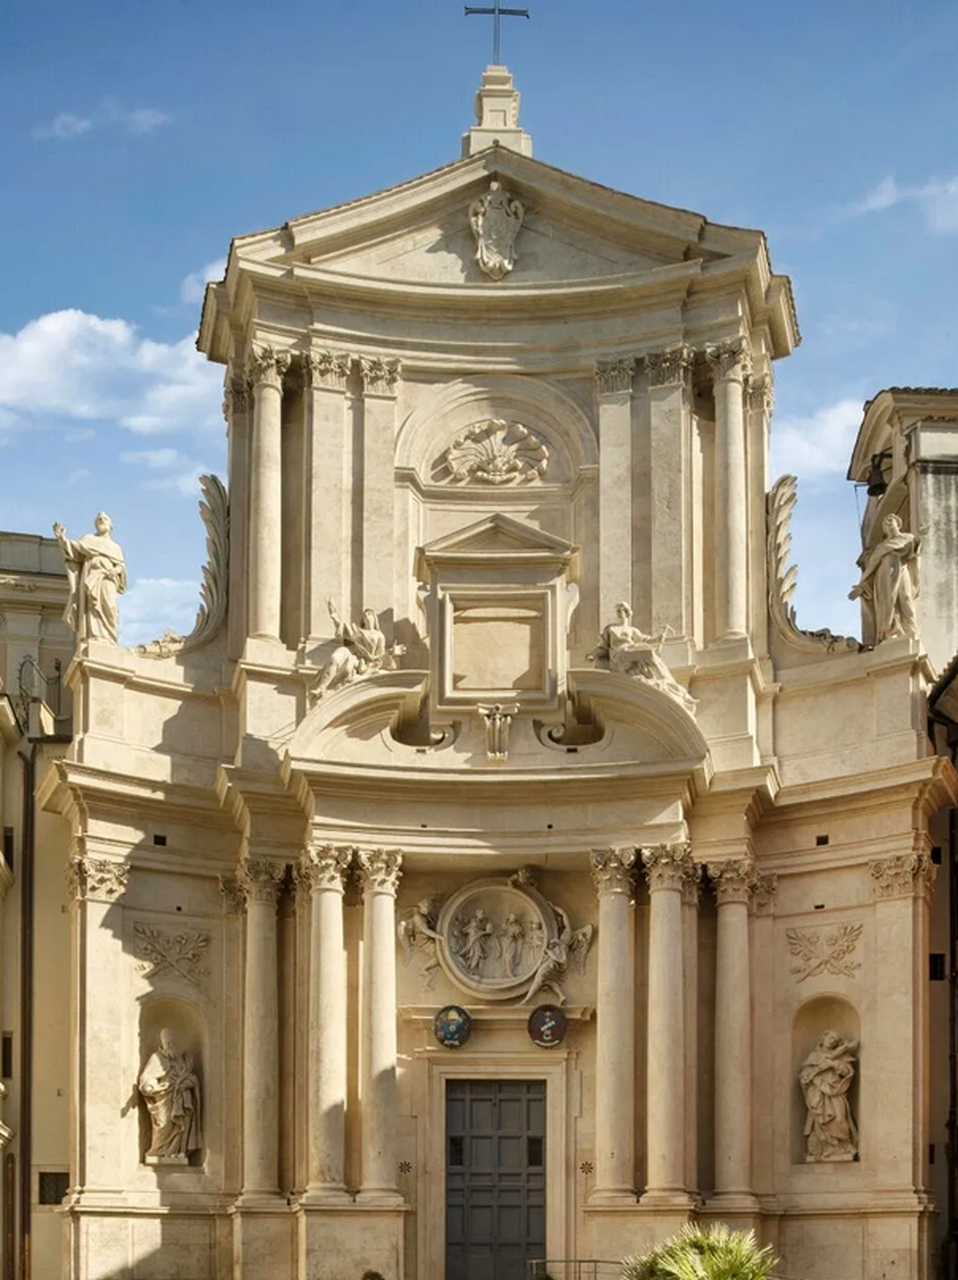 文艺复兴时期红衣主教的宅邸——palazzo salviati cesi mellini宫殿